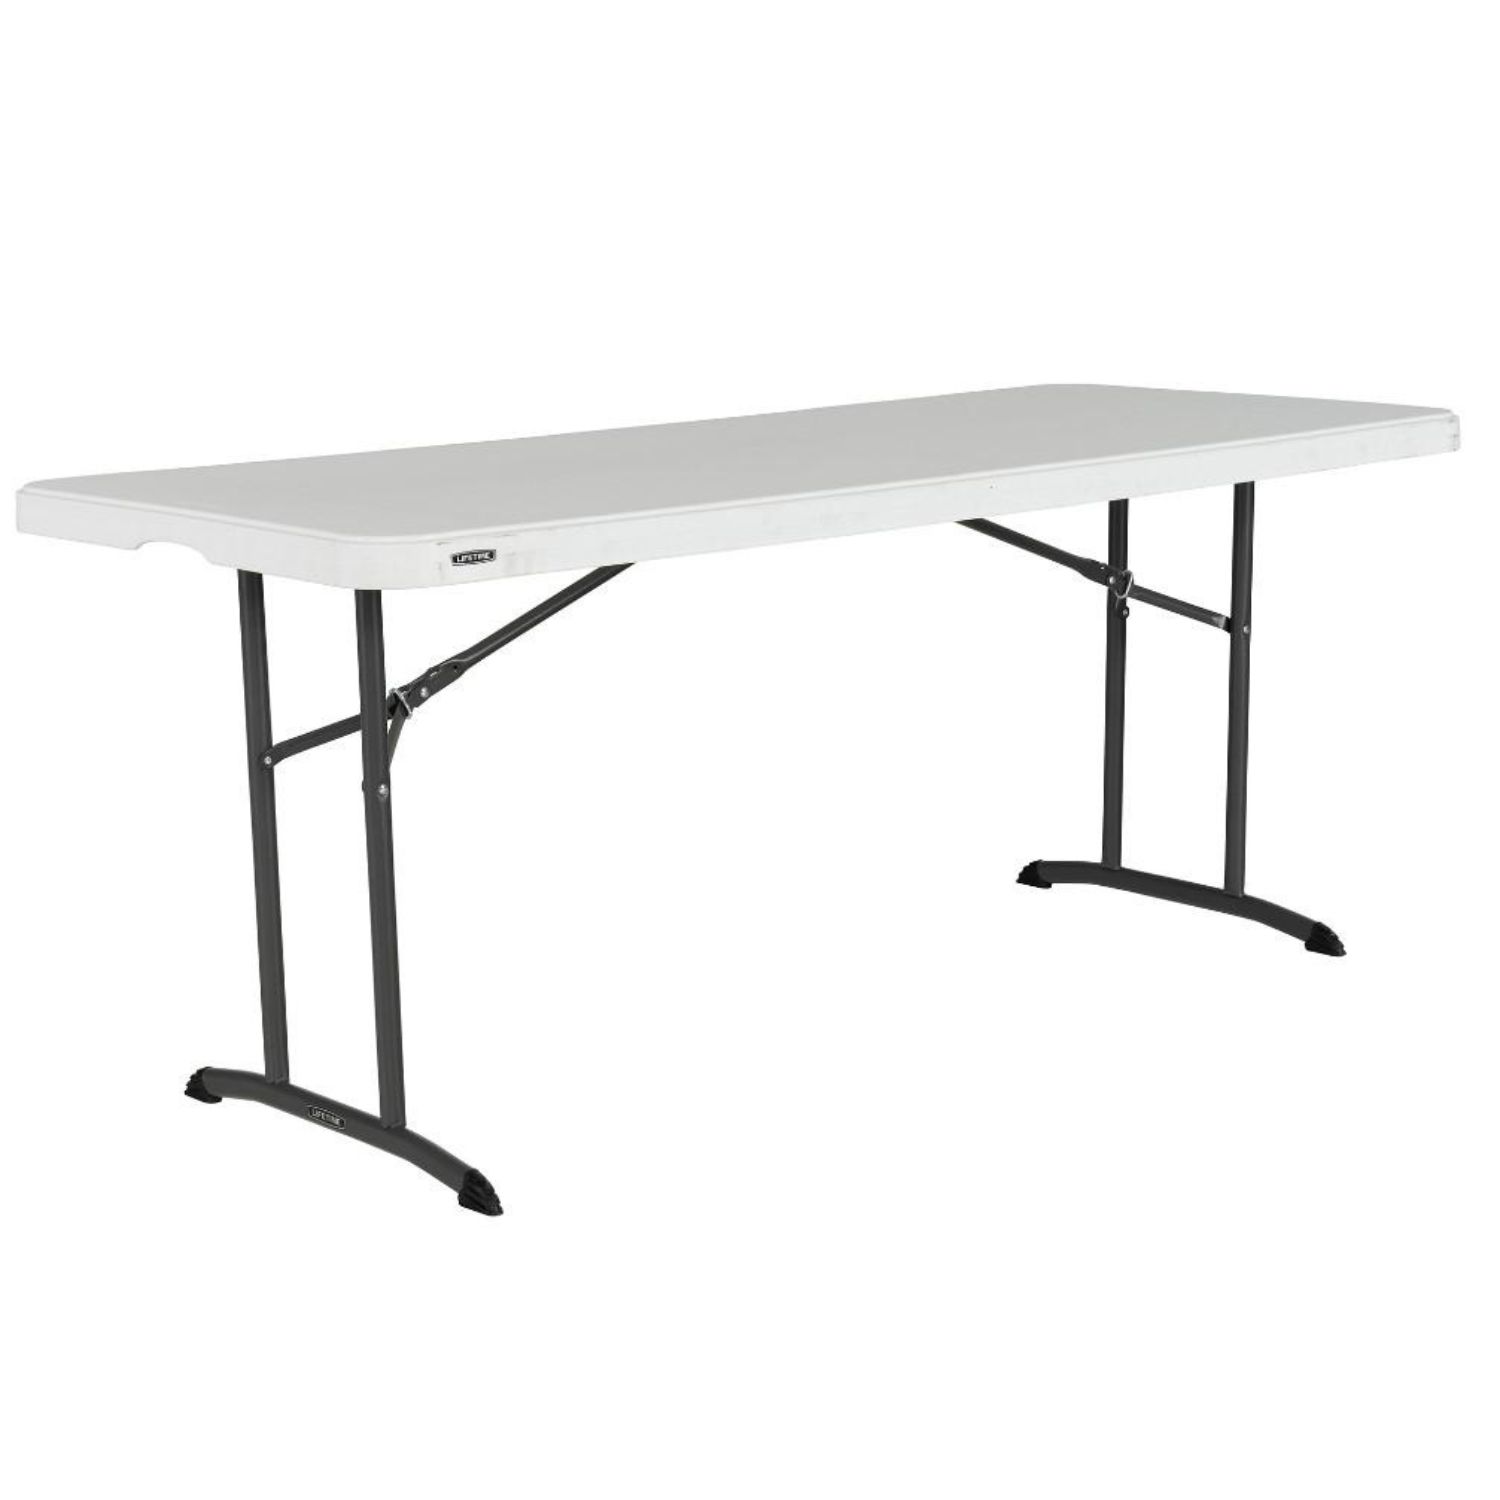 Table rectangulaire BLANCHE ou GRISE de 183cm avec pieds pliants